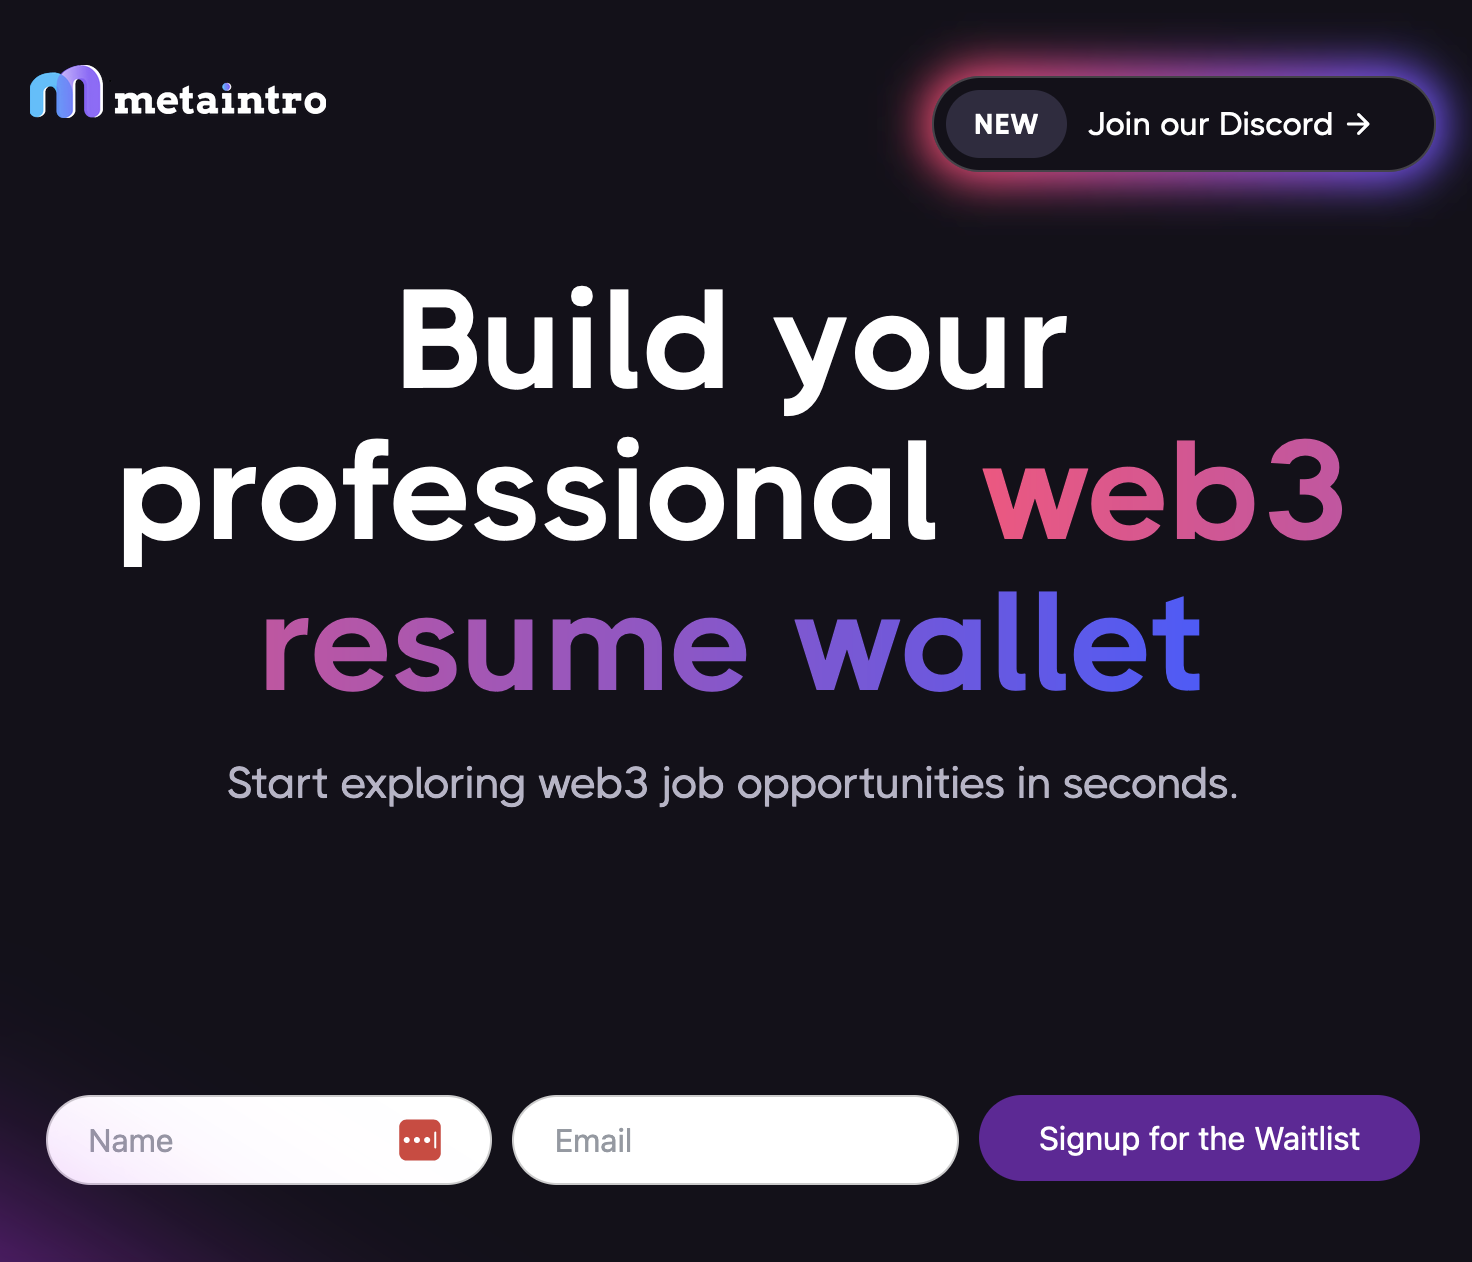 Metaintro job board web3